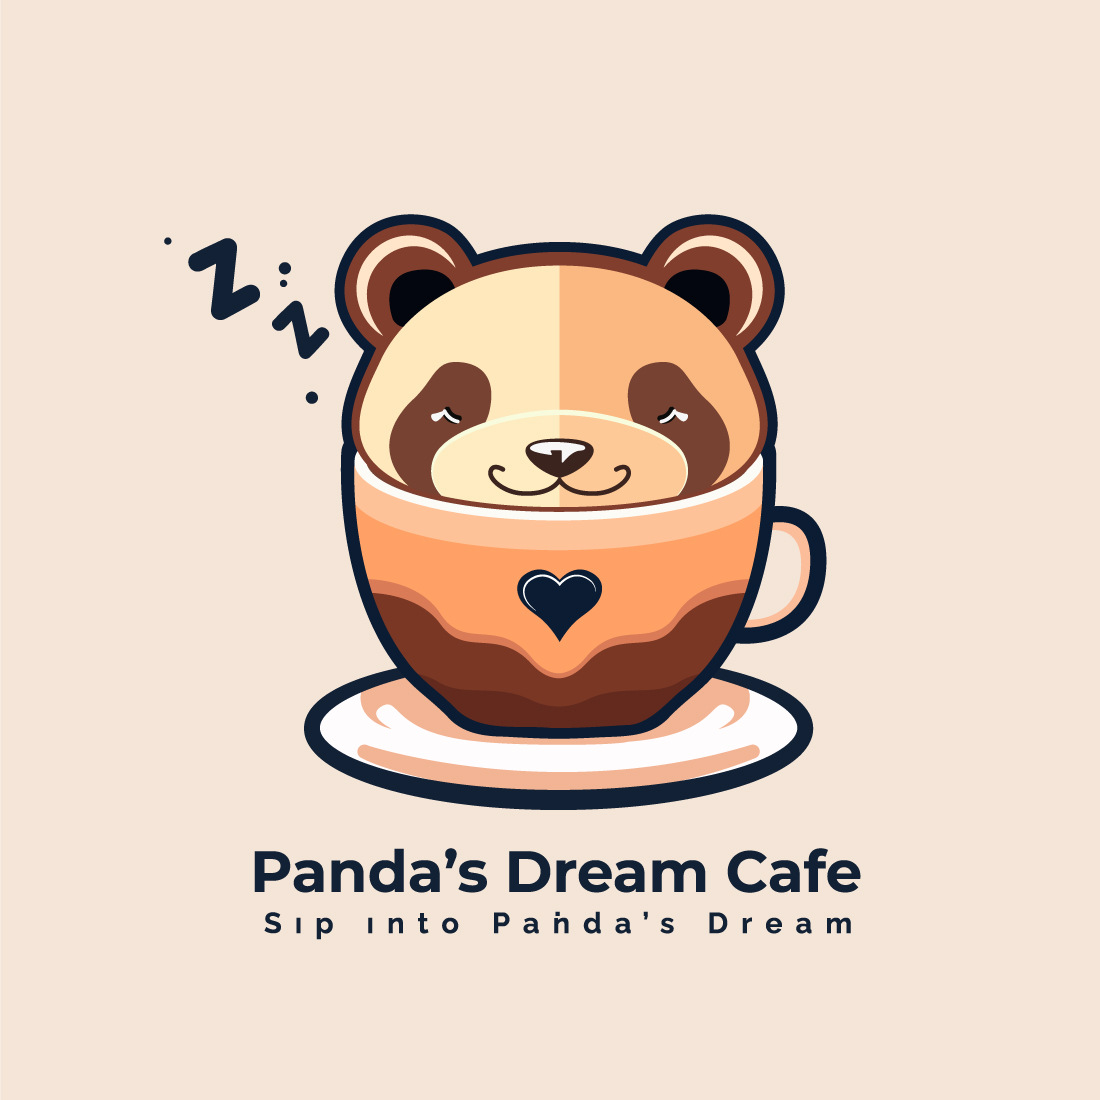 Panda's Dream Cafe Logo Design cover image.